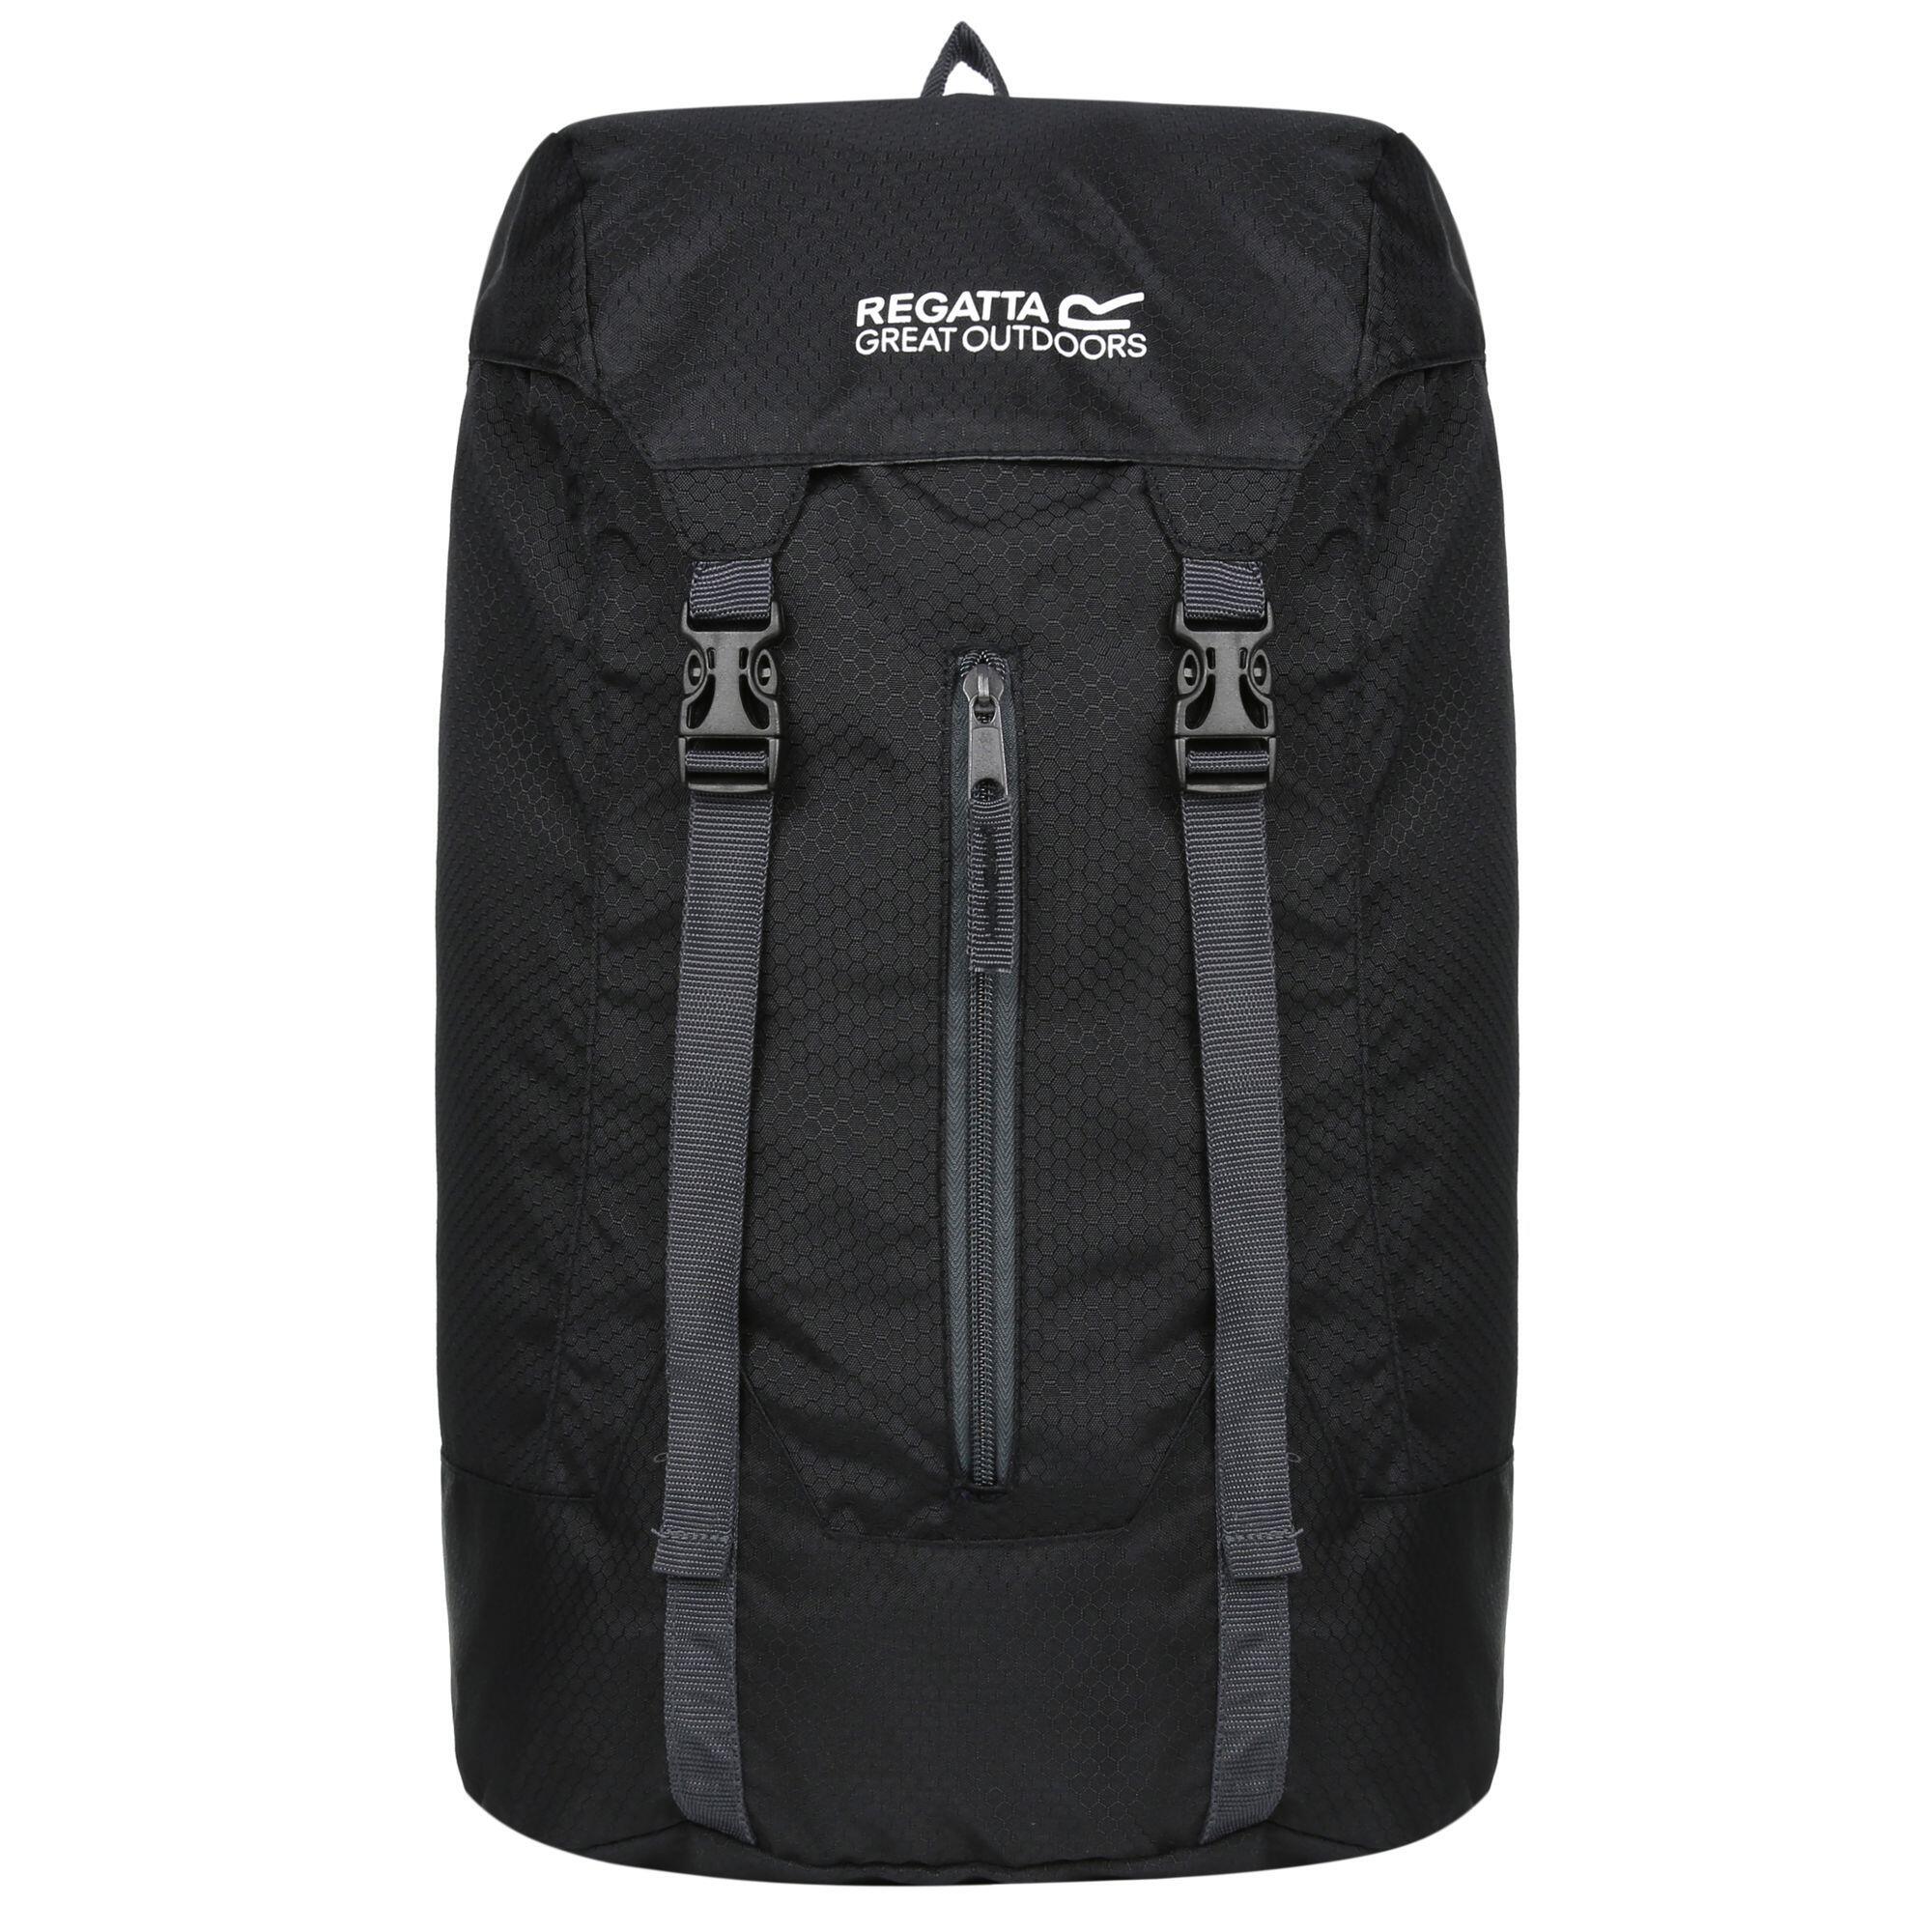 Great Outdoors Easypack Packaway Rucksack/Backpack (25 Litres) (Black) 1/5